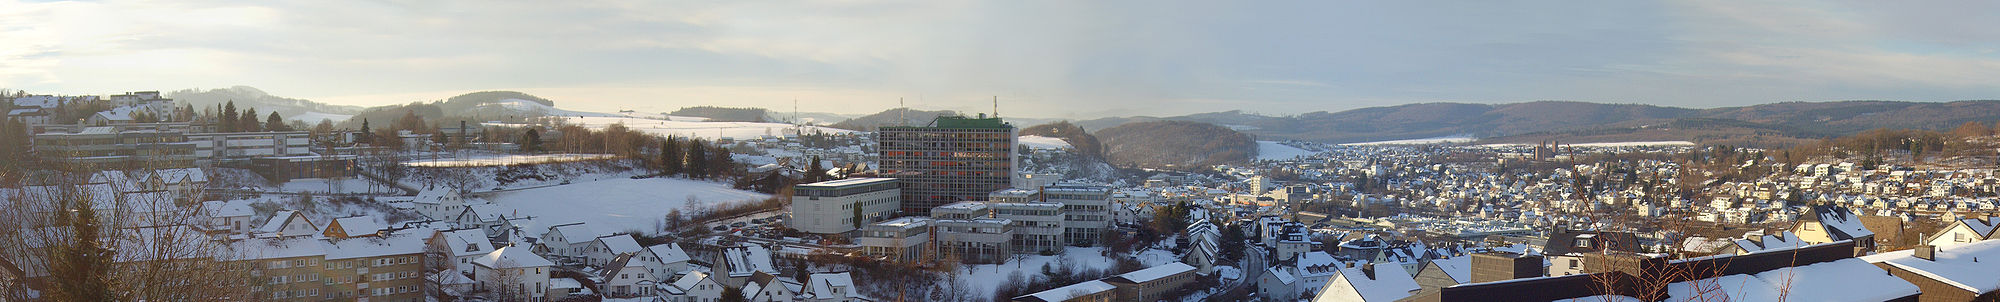 Panoramablick auf Meschede im Winter 2009. Erkennbar (von links nach rechts): Das August-Macke-Schulzentrum, die Telekom, die Honsel-Werke, die Benediktiner-Abtei Königsmünster.